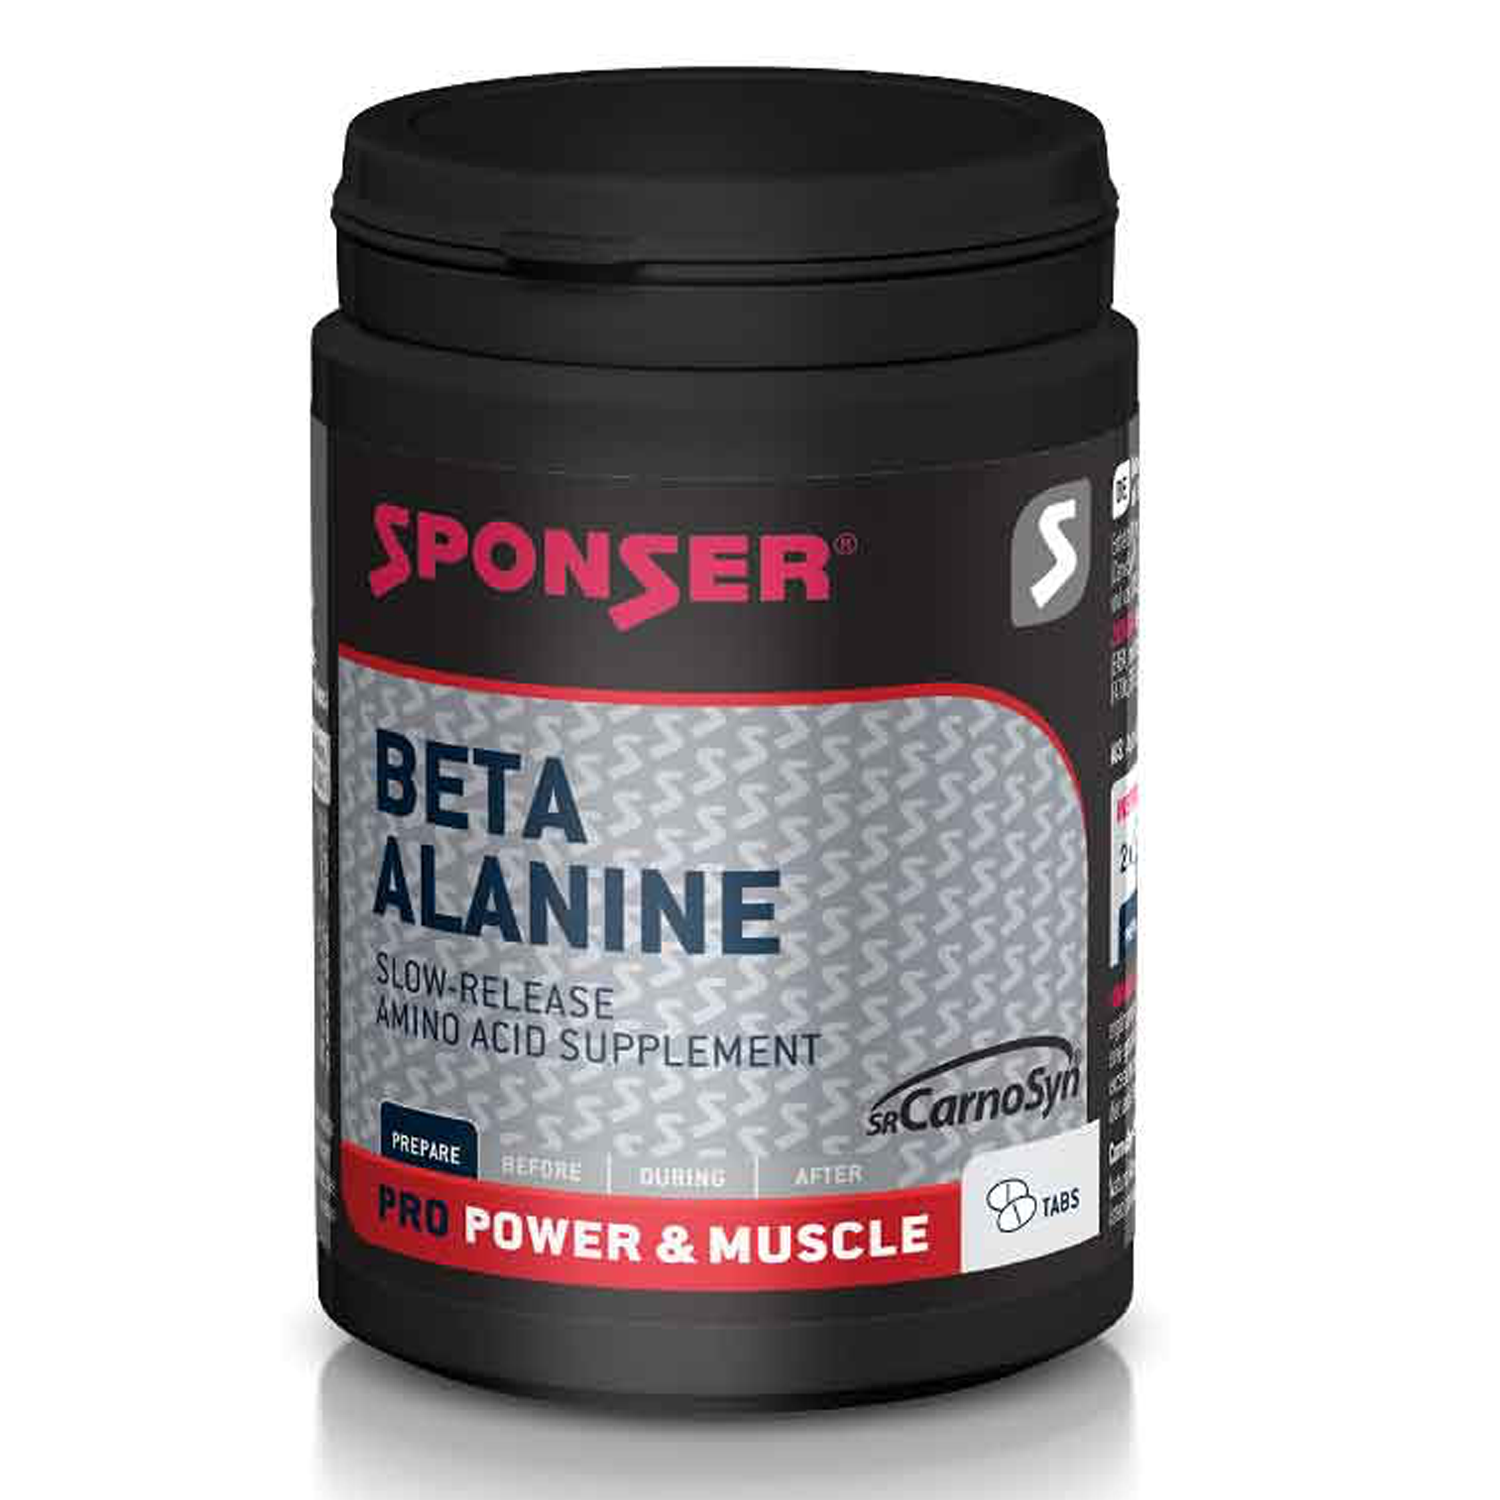 Sponser beta alanine